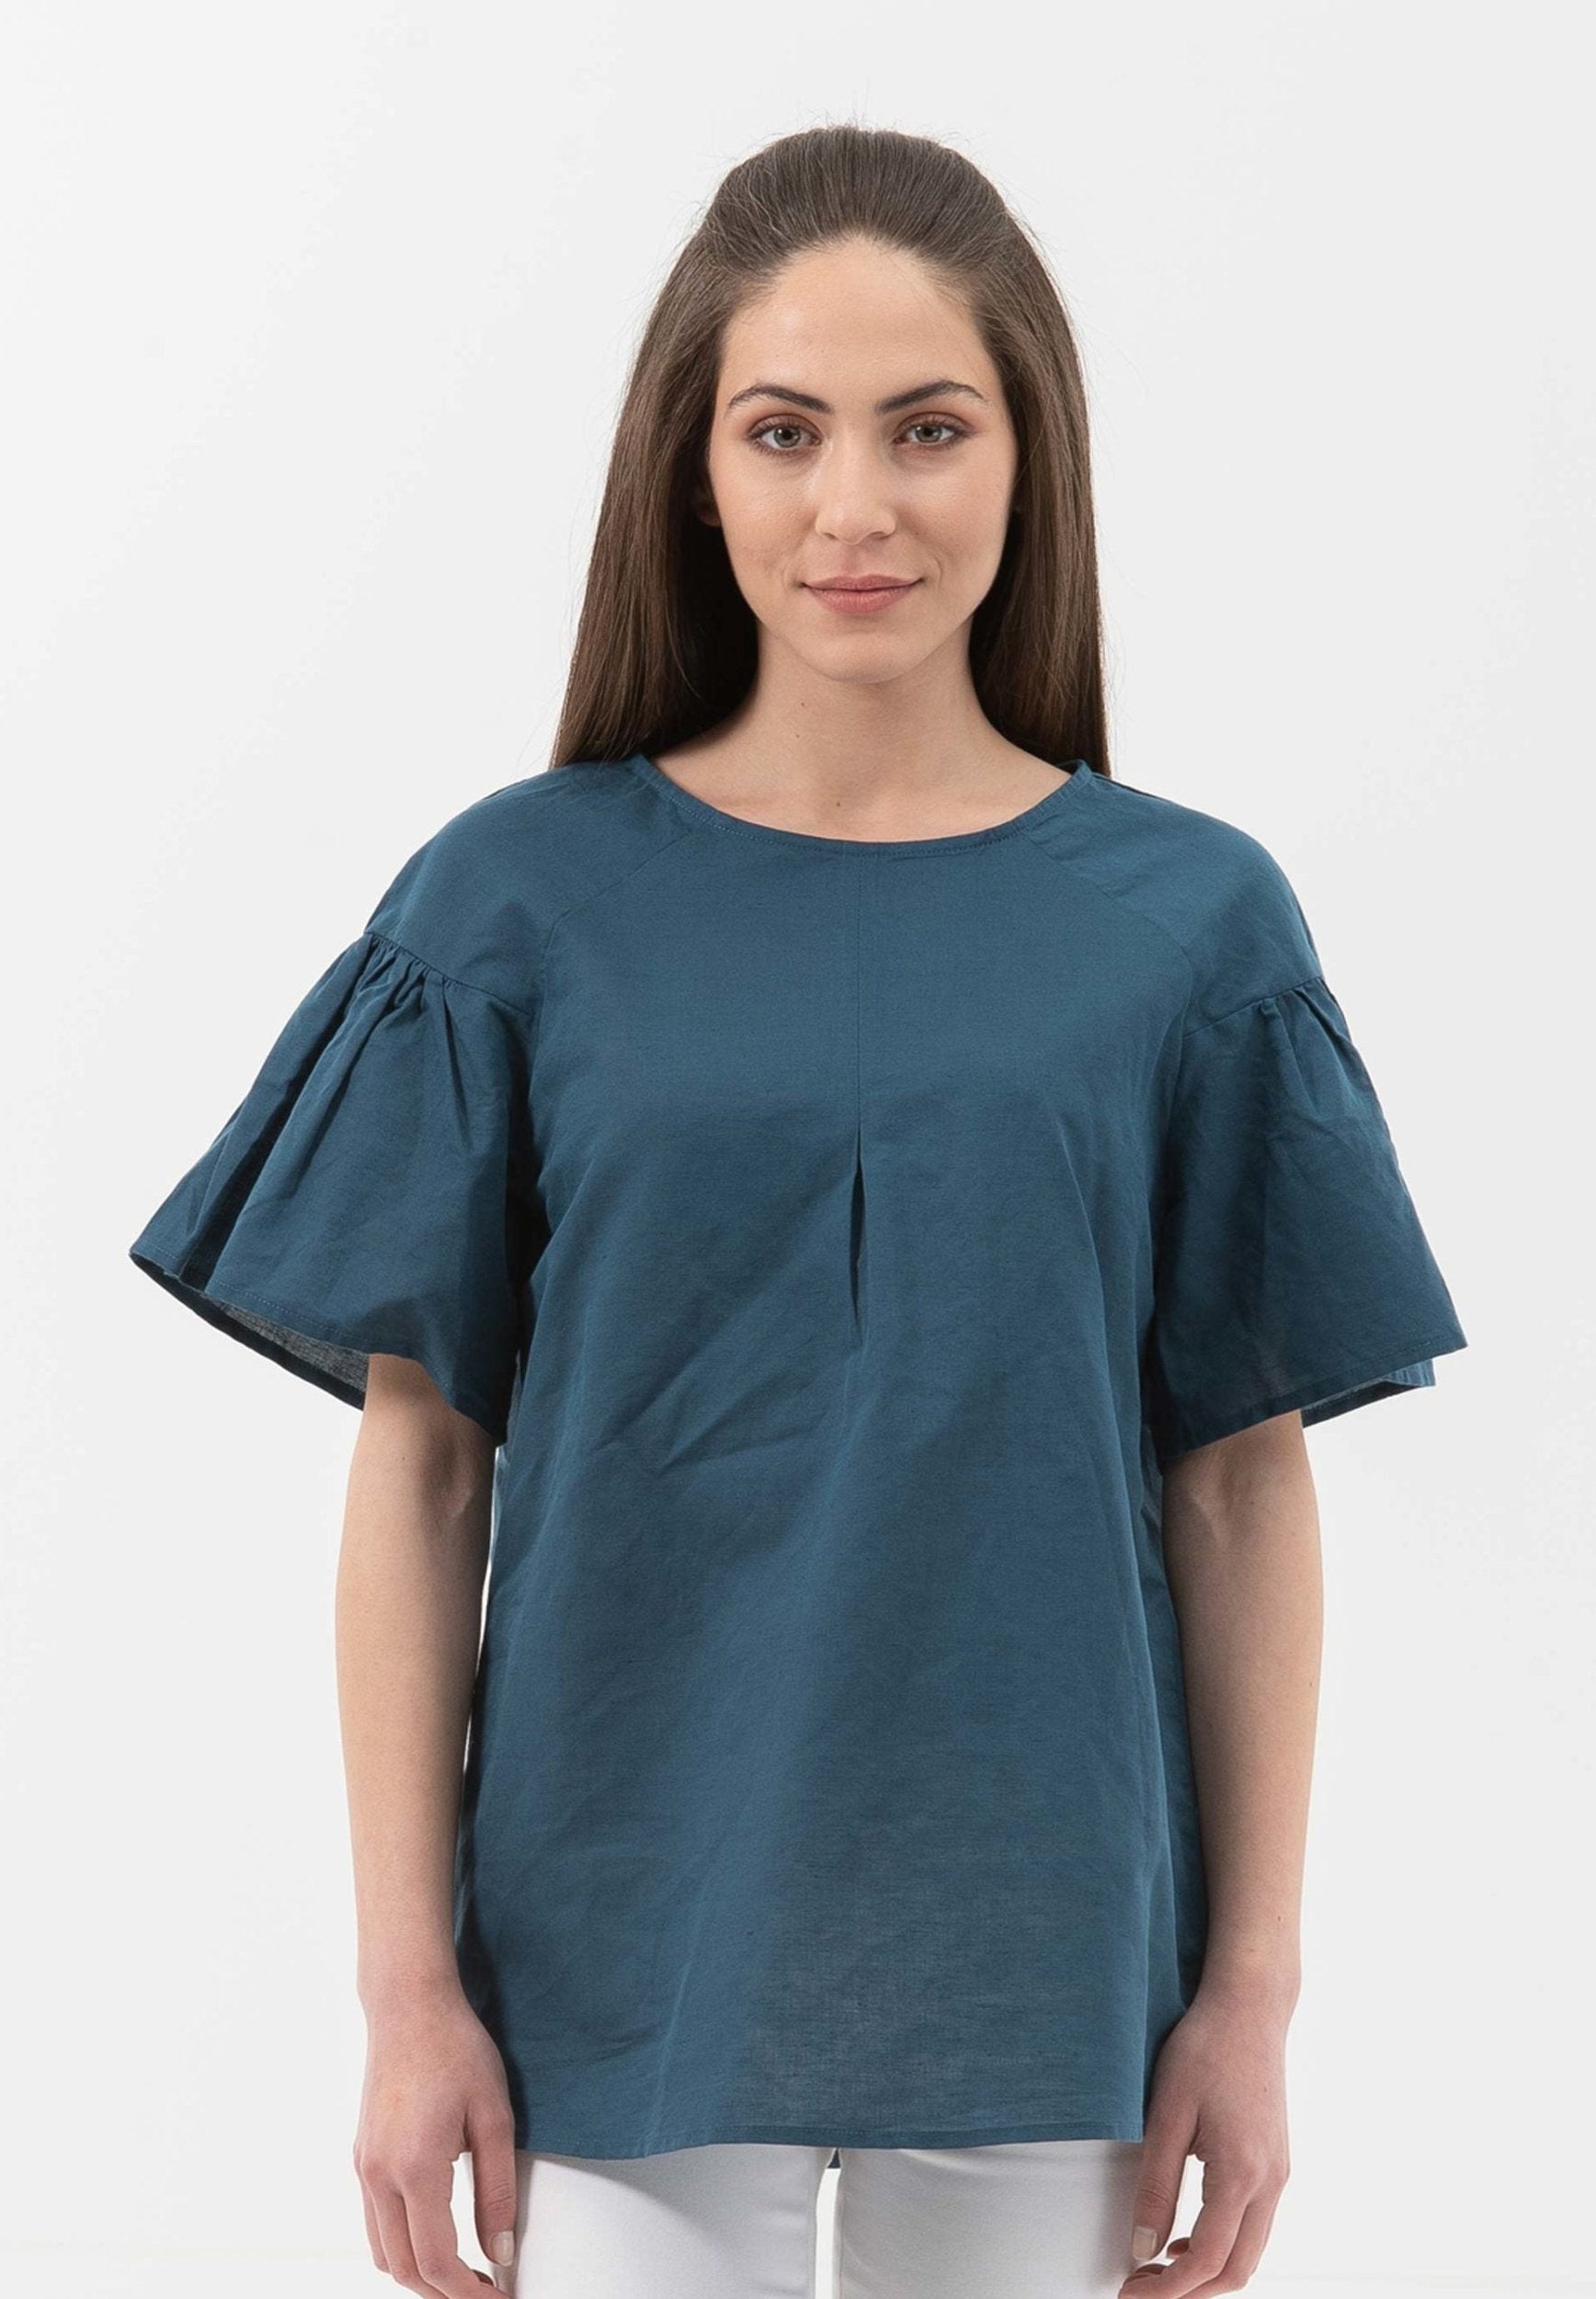 Bluse aus Leinen mit Bio-Baumwolle | Nachhaltige Damenmode